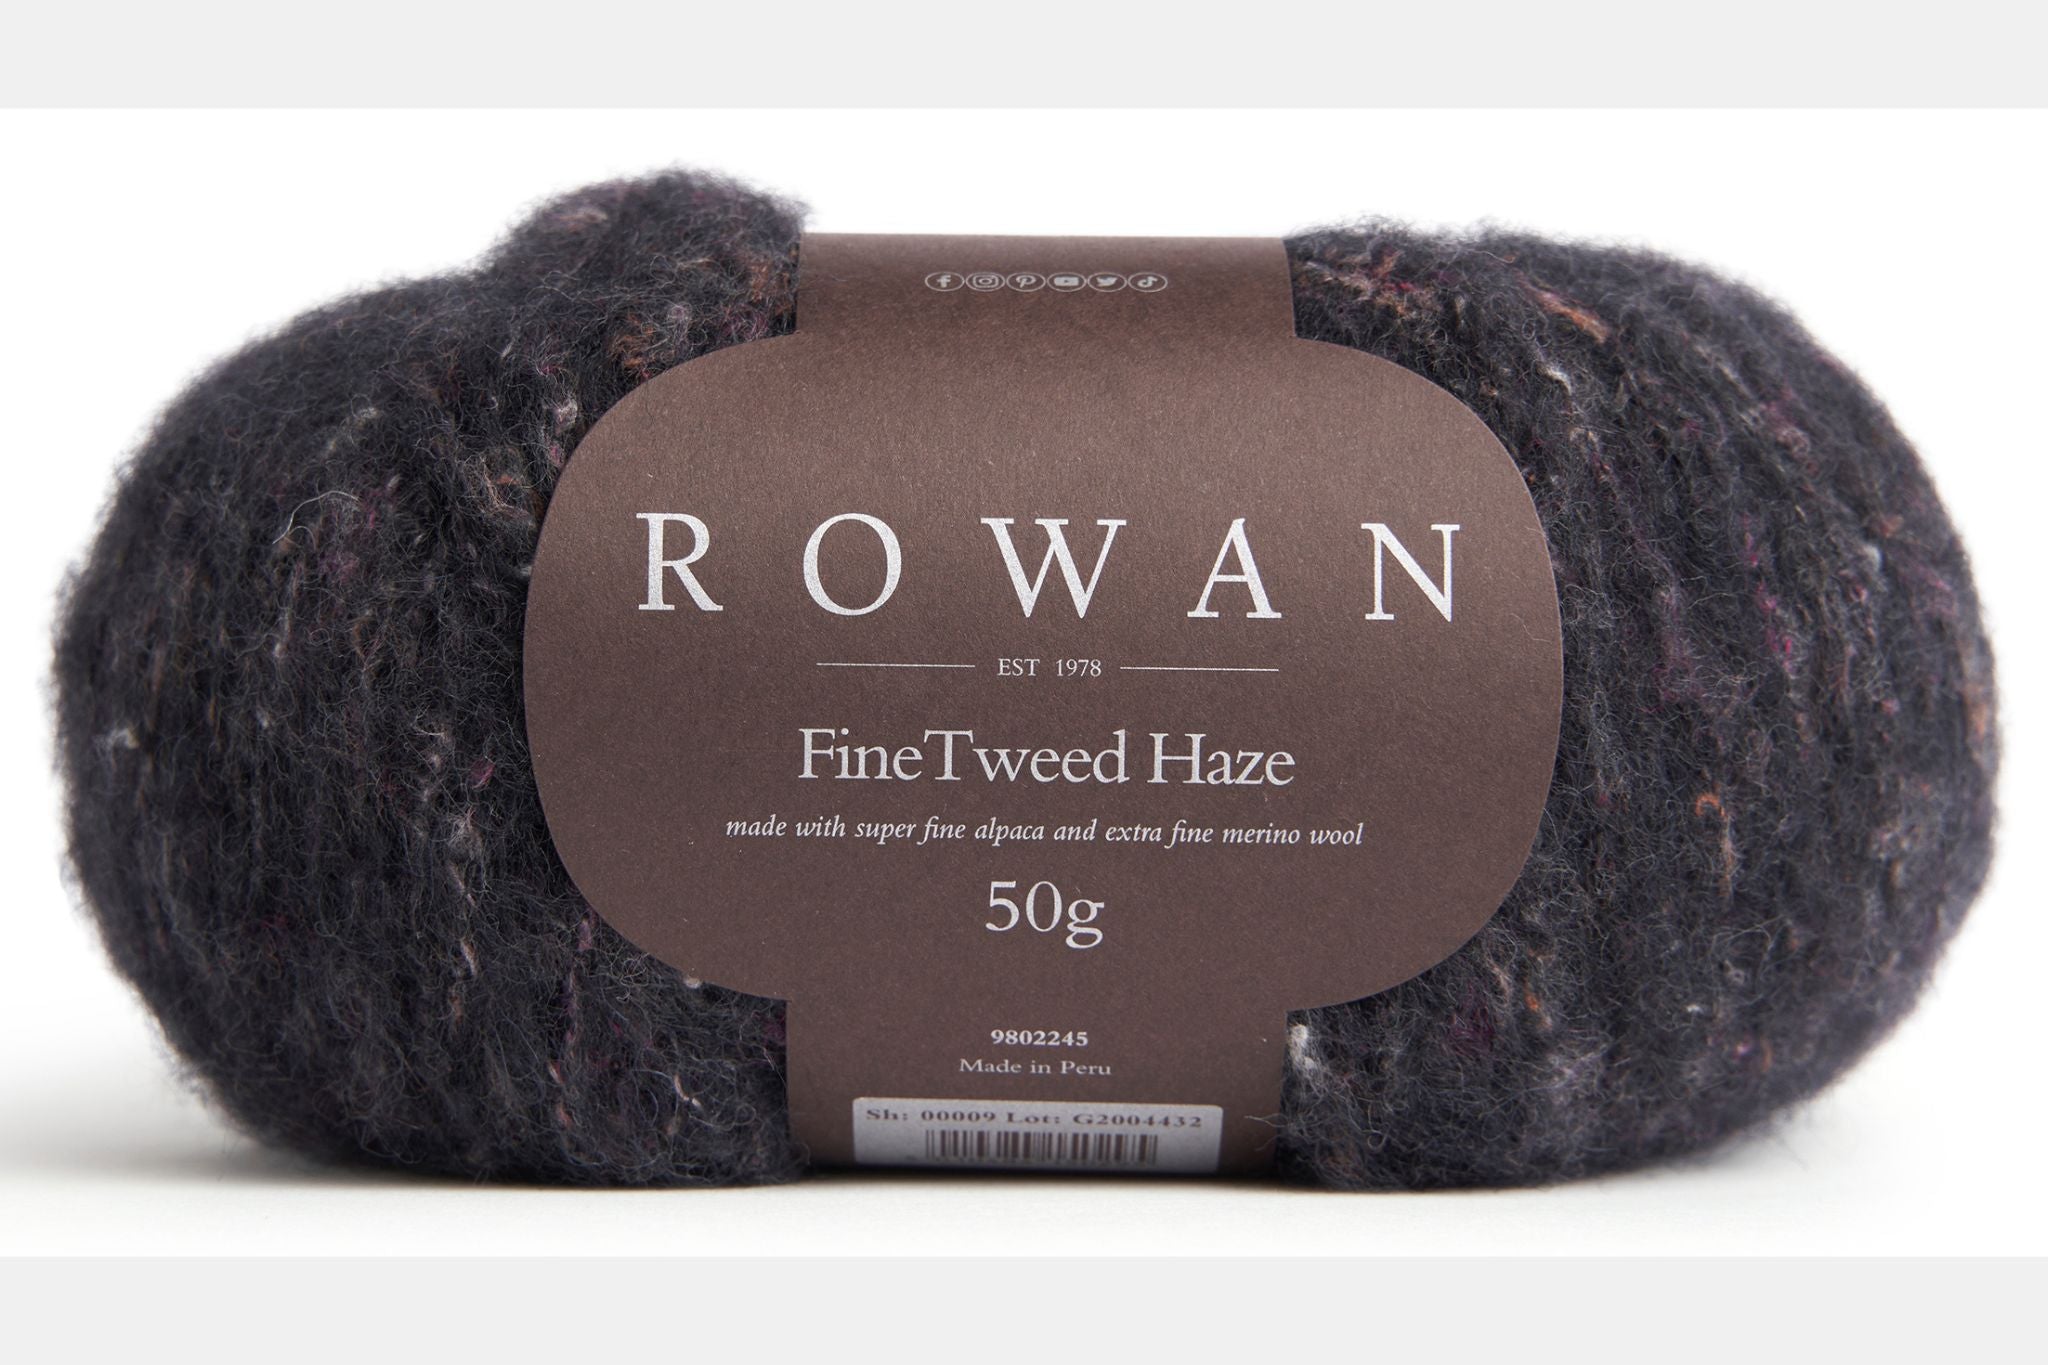 Rowan Fine Tweed Haze in Nero